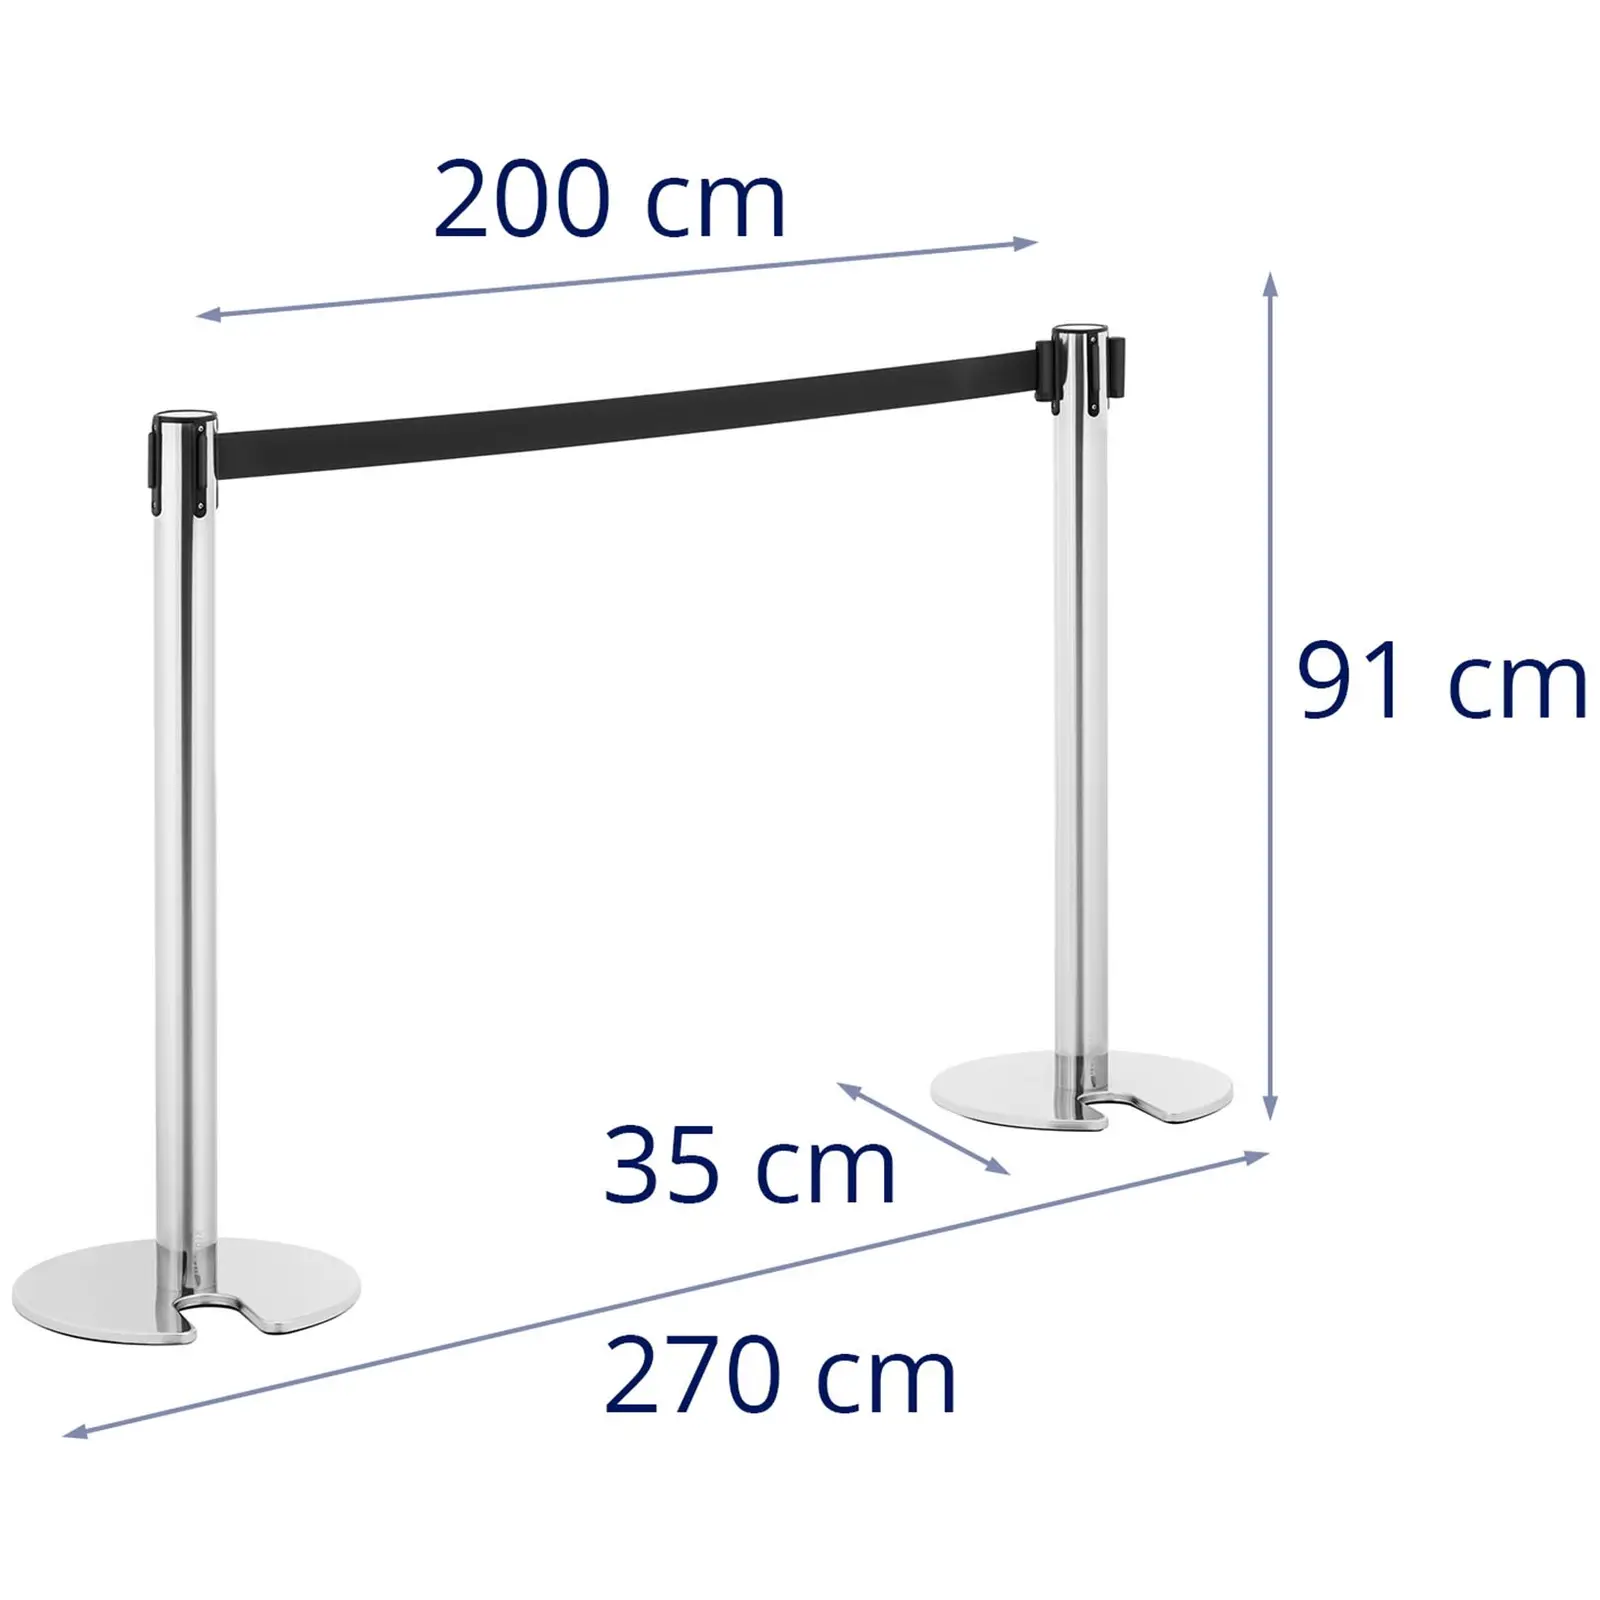 2 postes separadores com fita adesiva - 200 cm - aço inoxidável - base com rebaixo